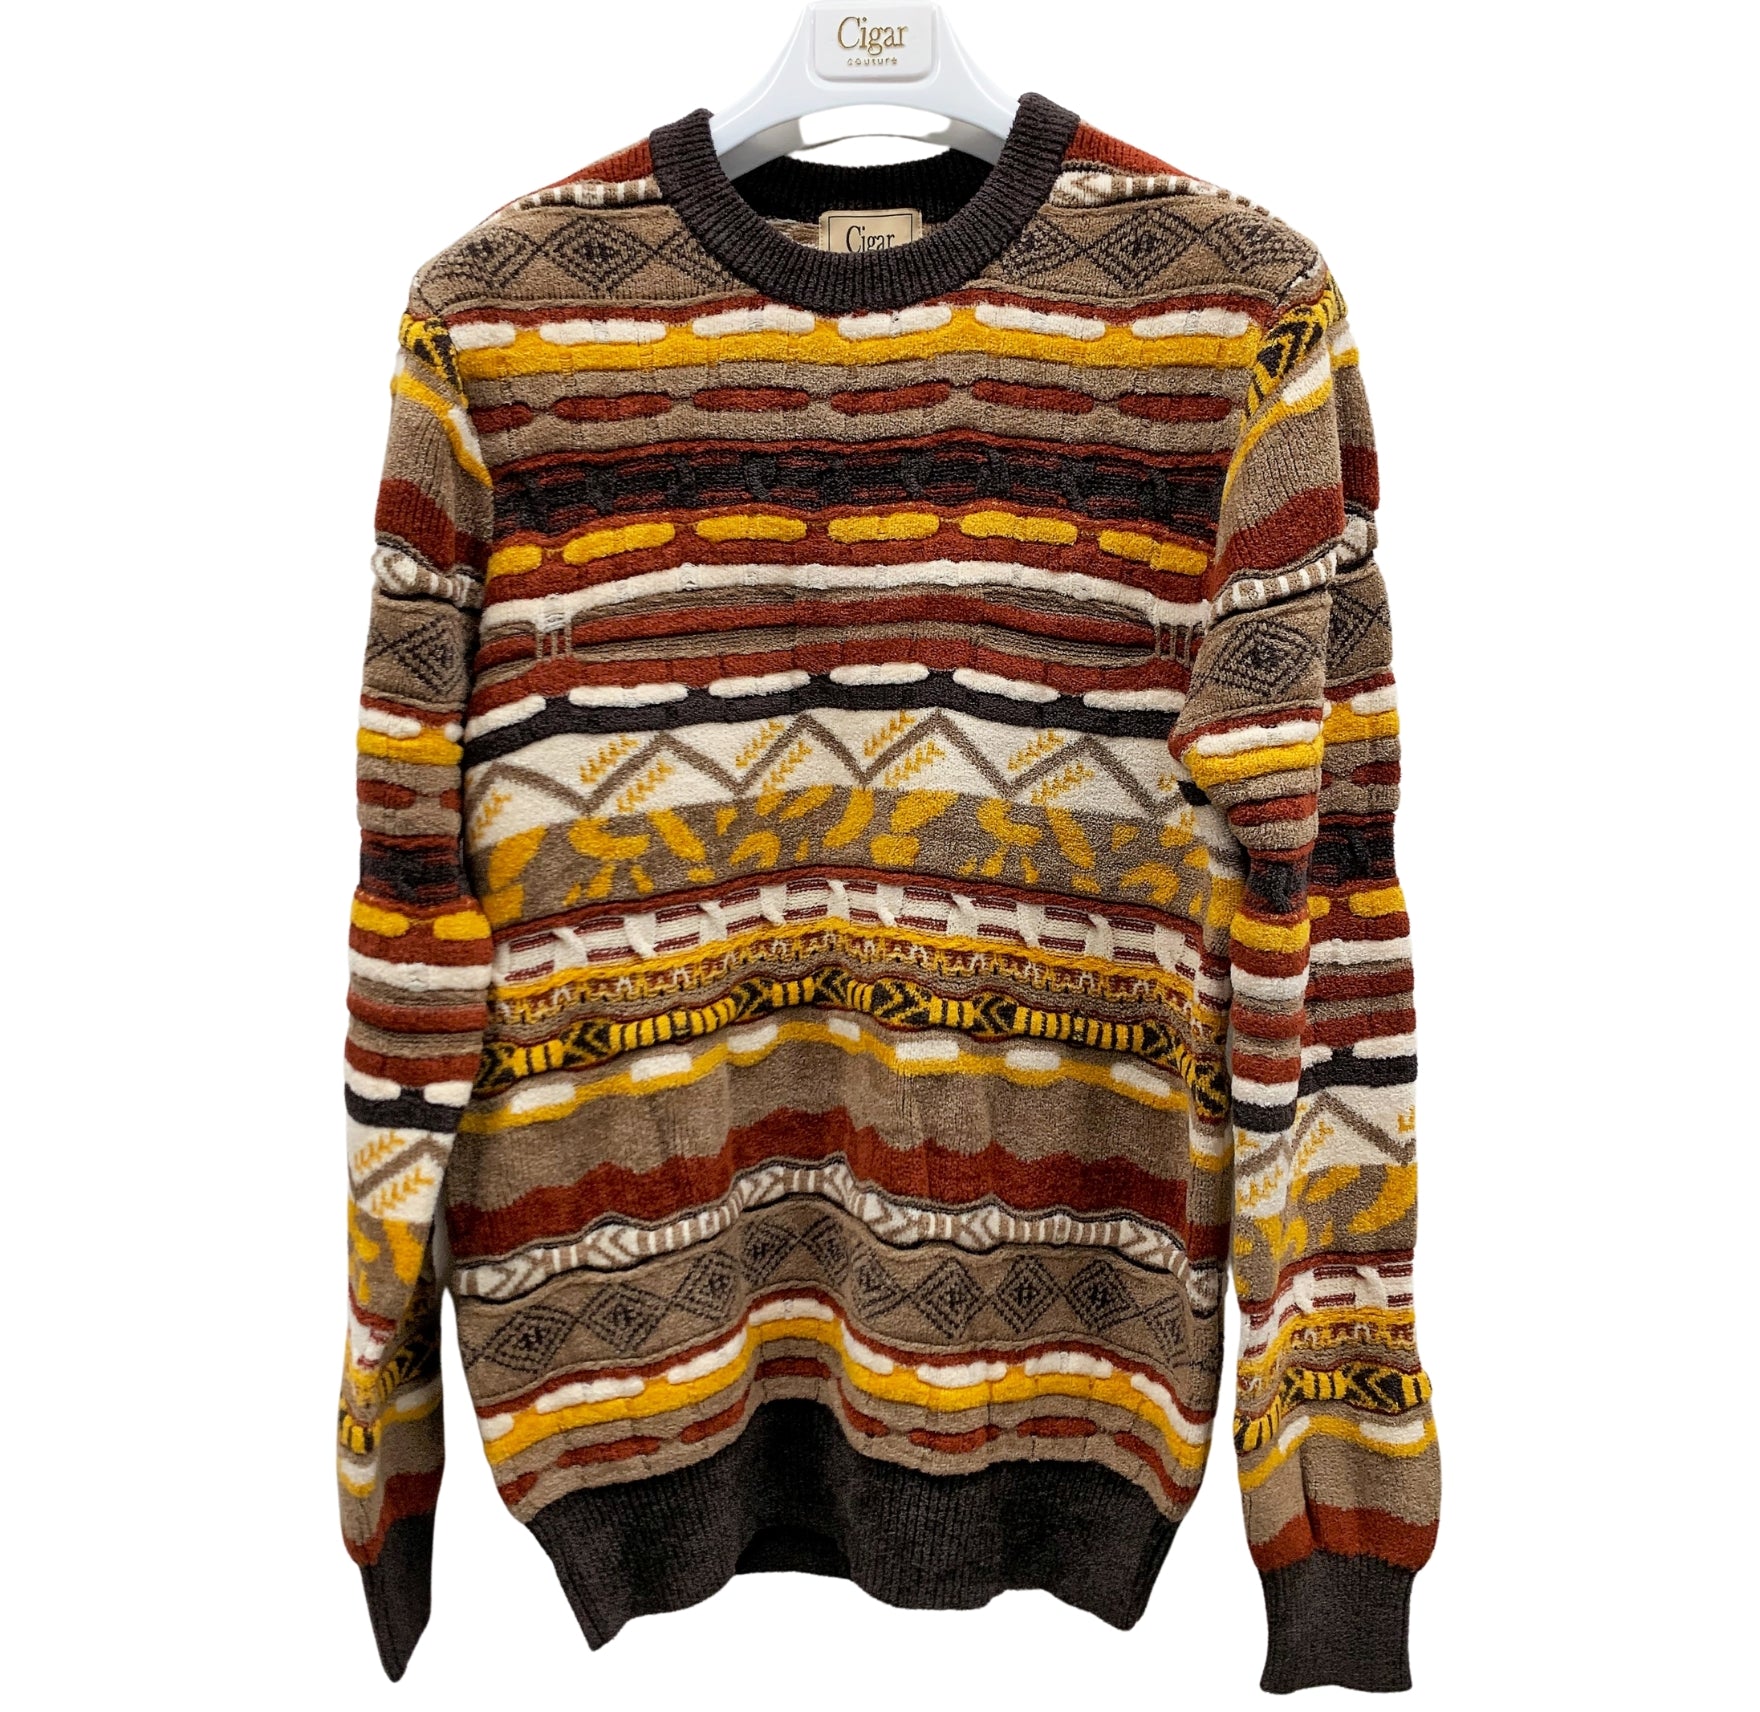 Berragamo SC-504 Sweater - Brown